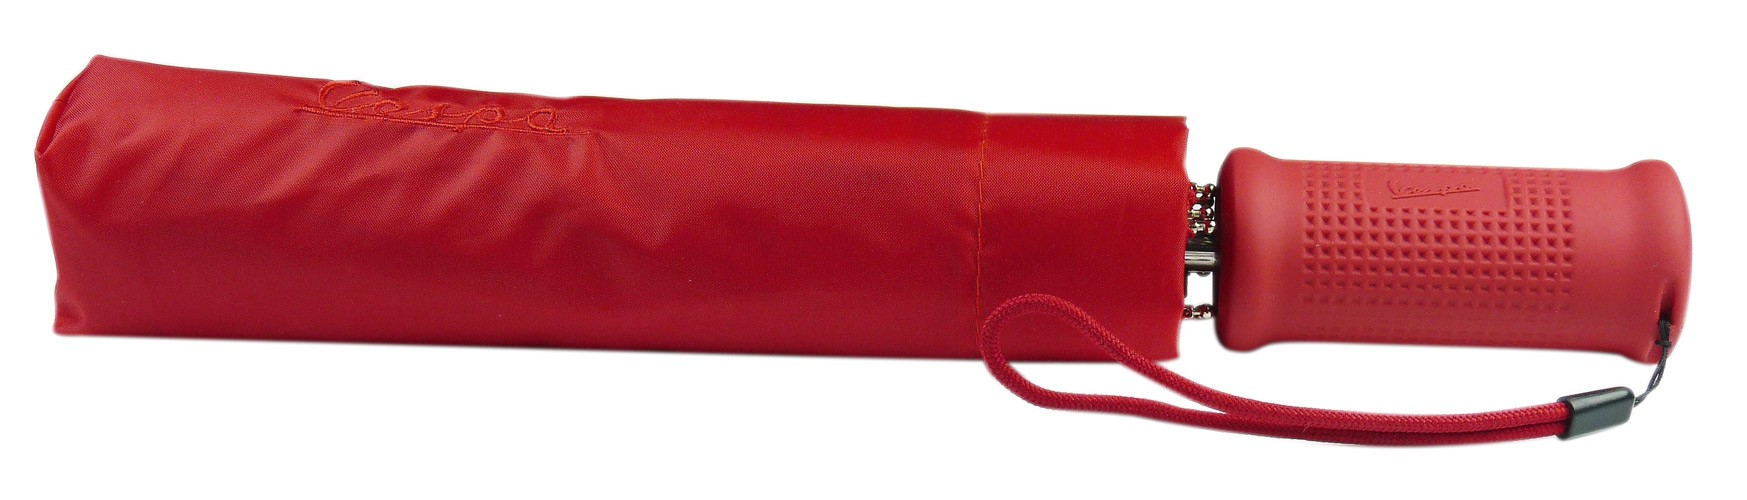 Parapluie Vespa rouge